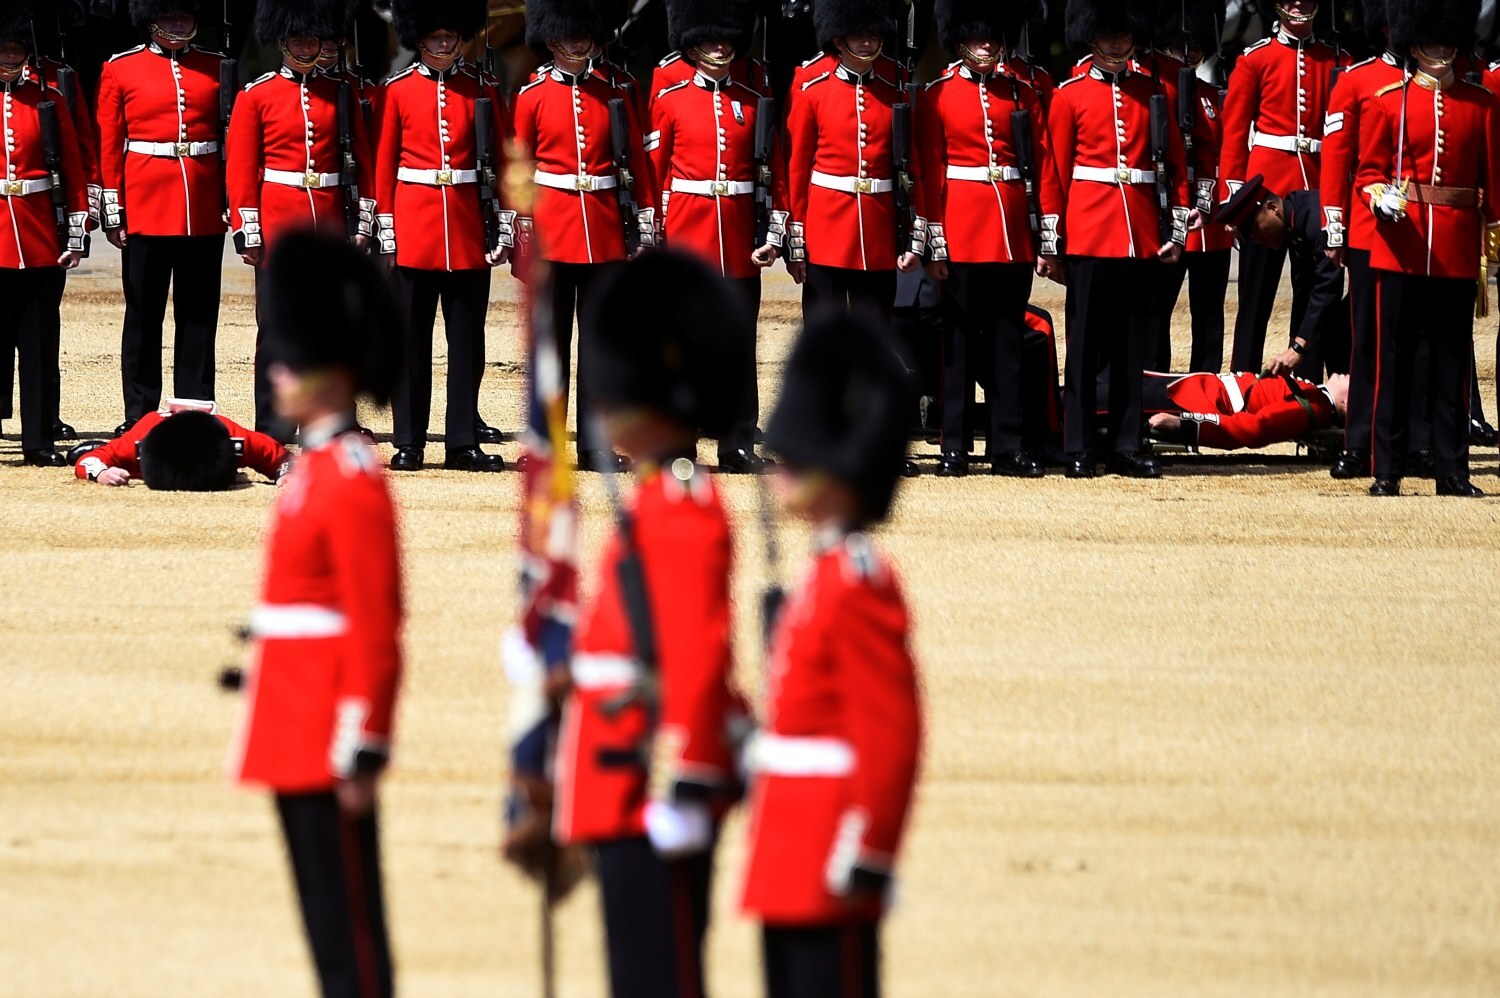 Guardias desmayados mientras sus compañeros siguen impasibles durante un ensayo antes del desfile de cumpleaños de la Reina la próxima semana, en Londres, Gran Bretaña, 